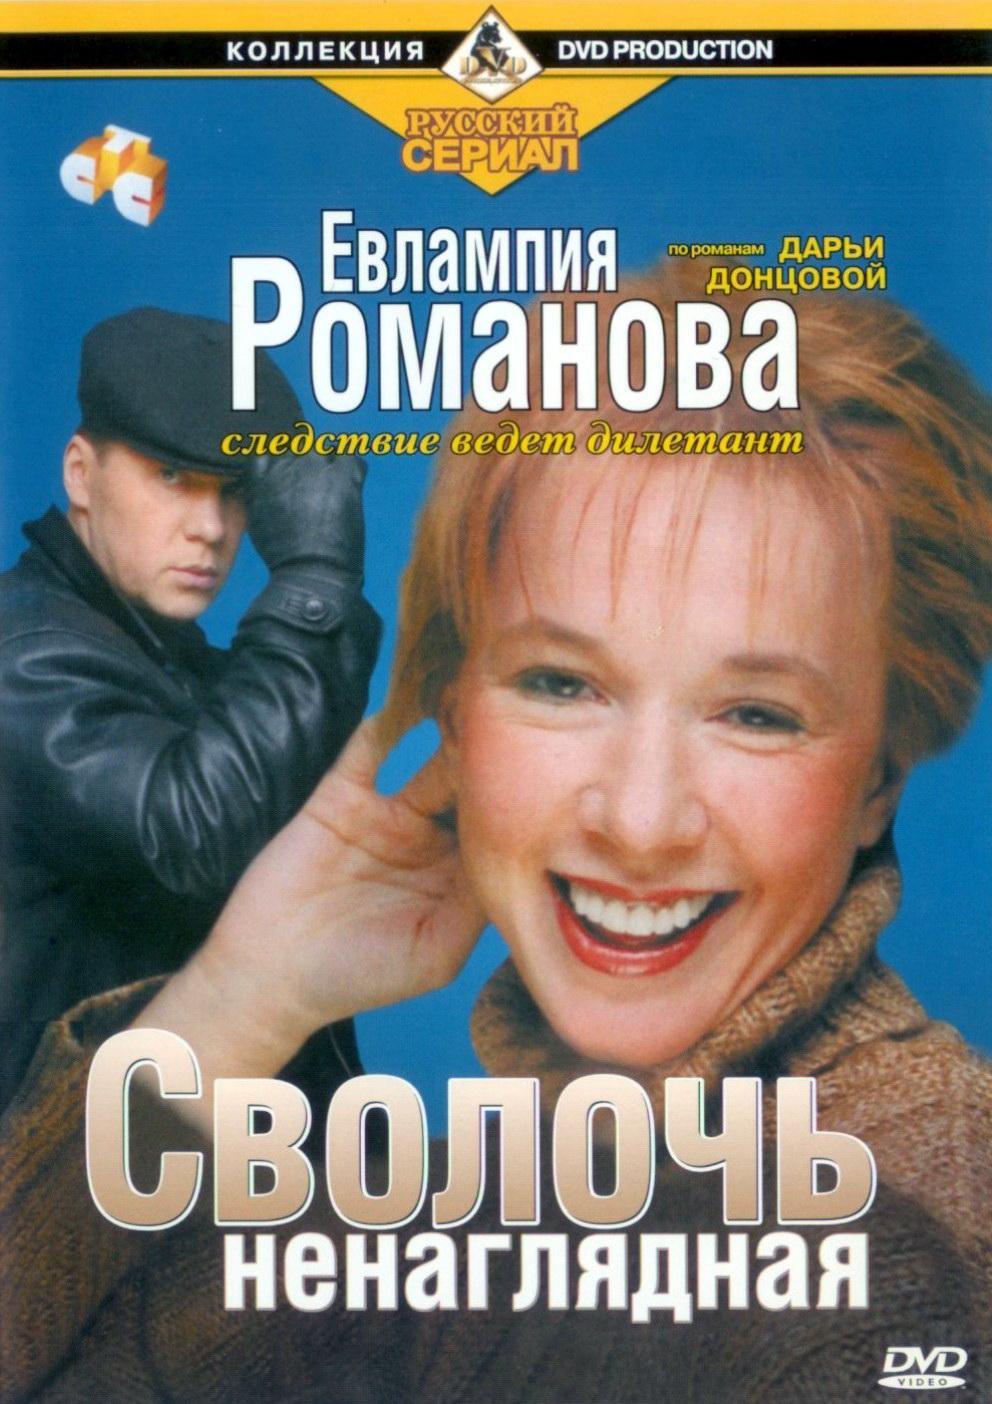 Постер фильма Евлампия Романова. Следствие ведет дилетант